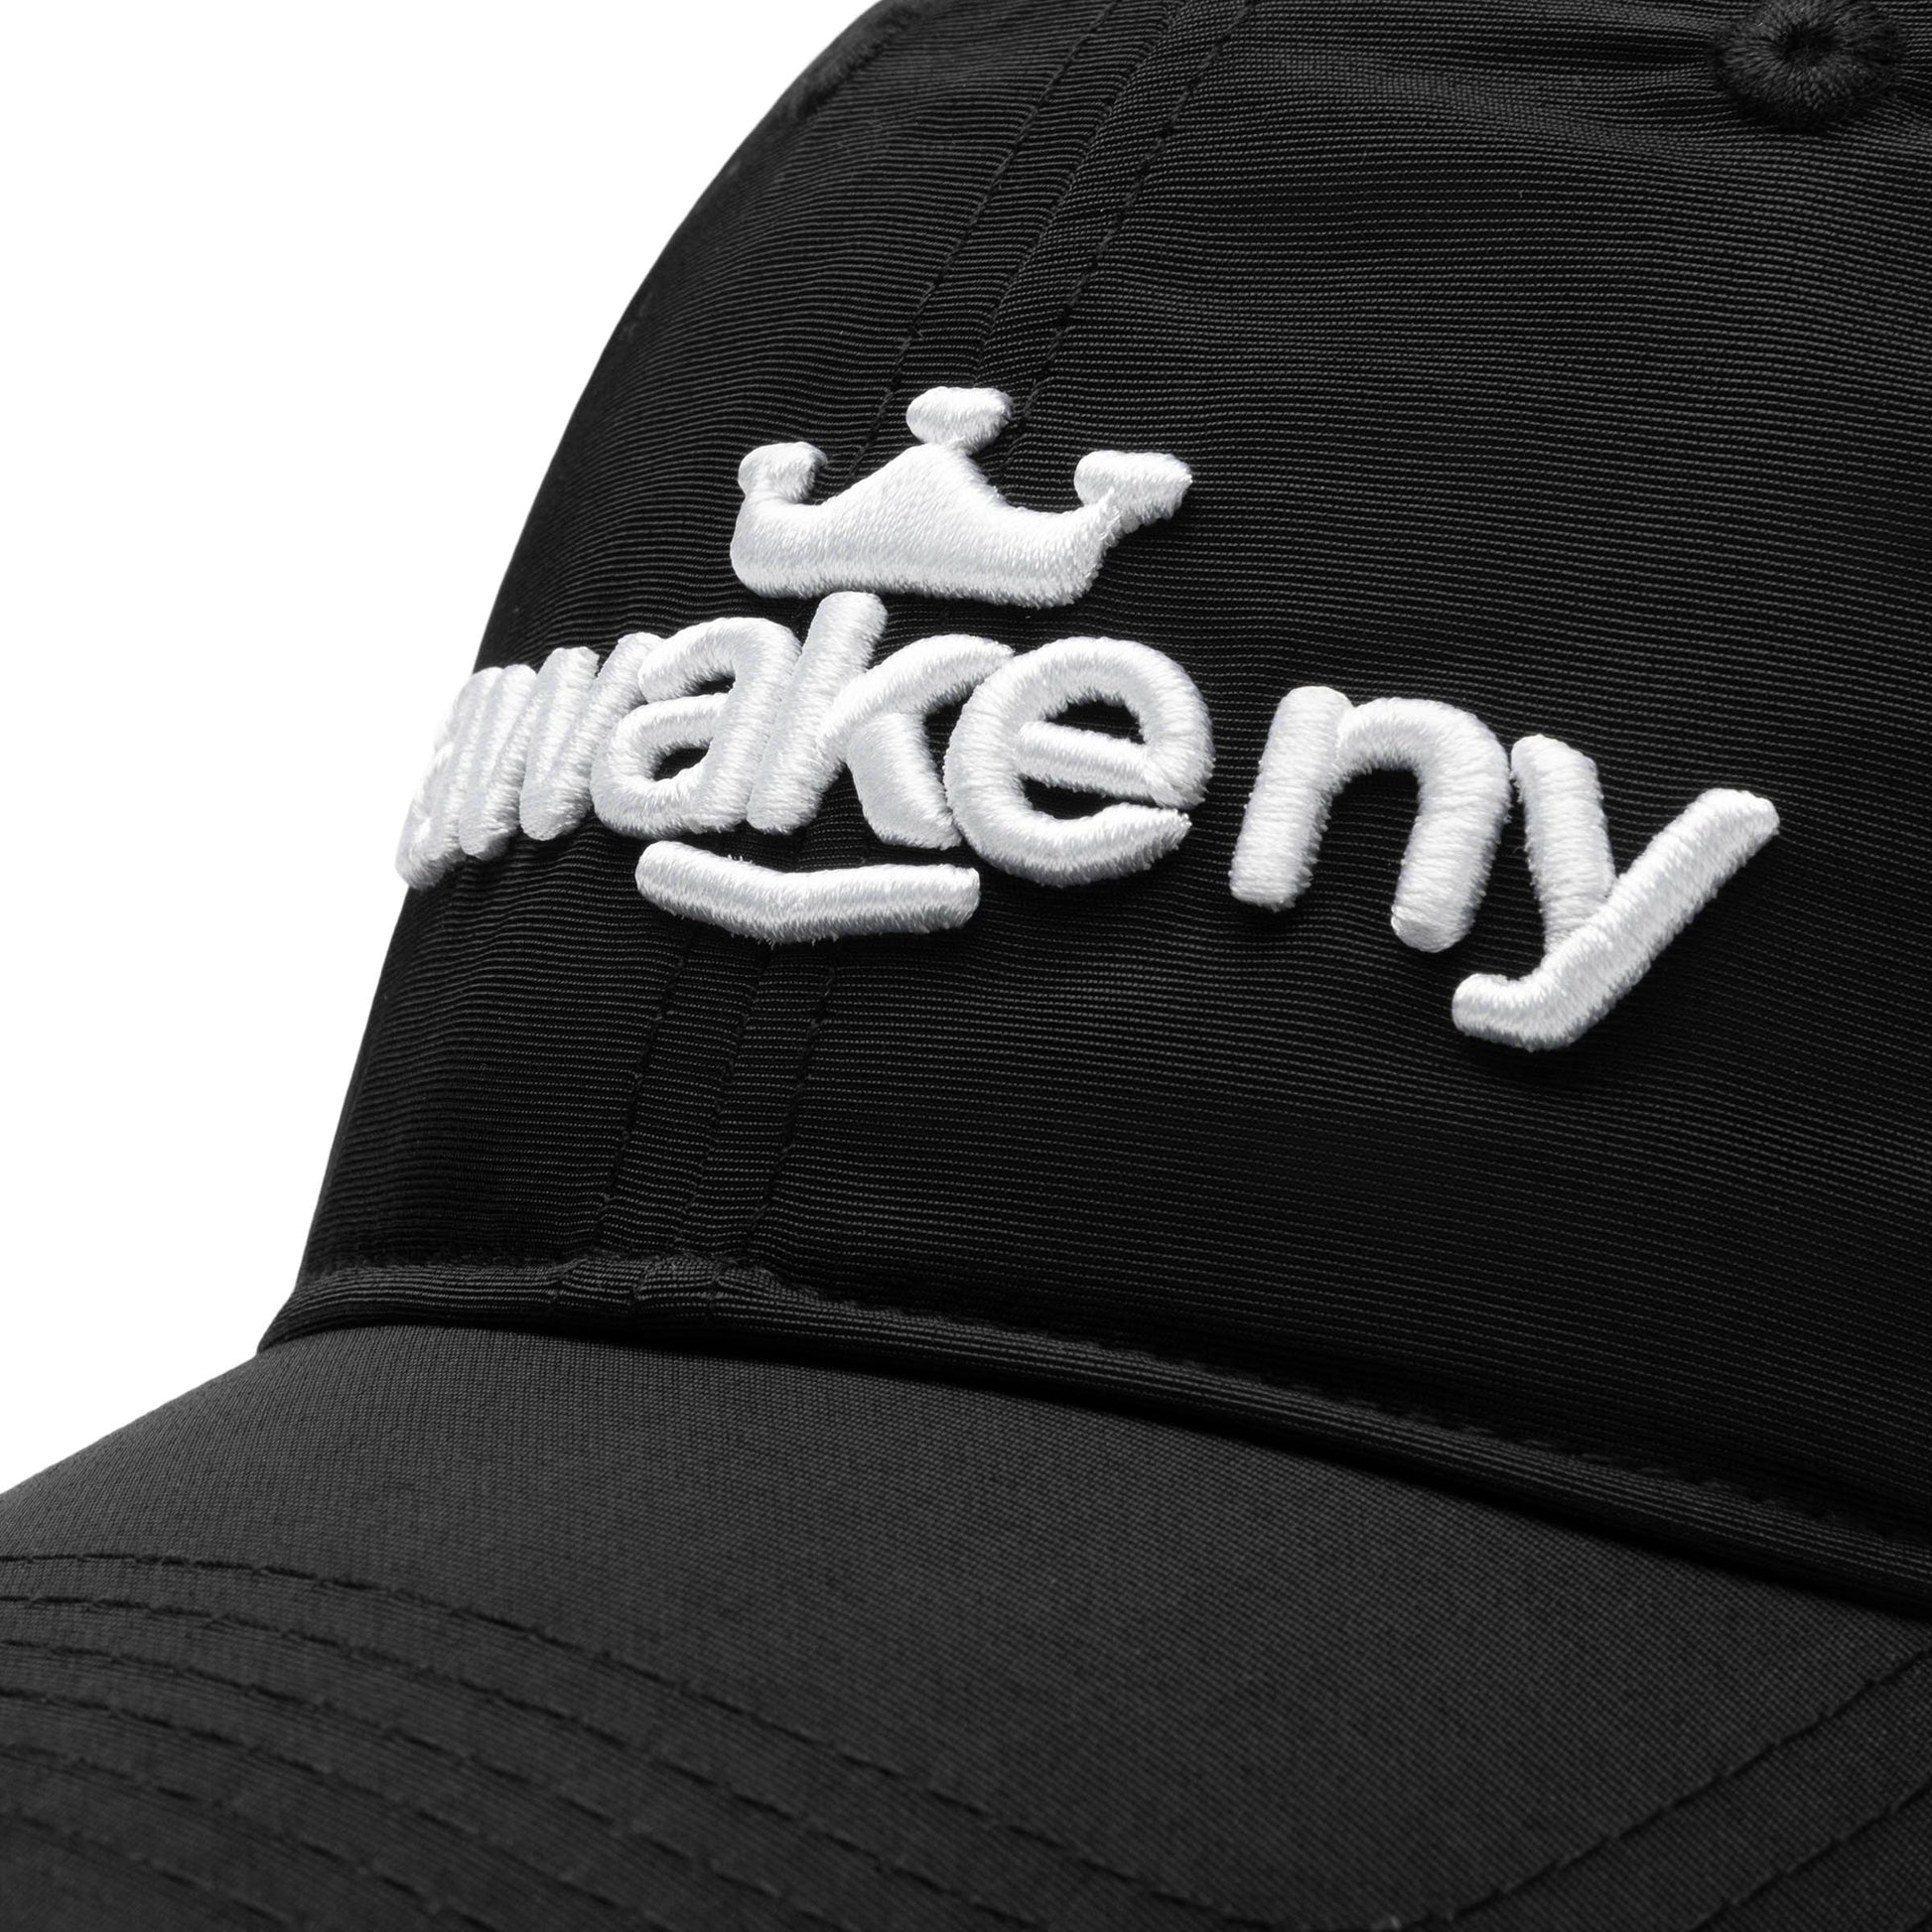 Awake NY Headwear BLACK / O/S NYLON HAT